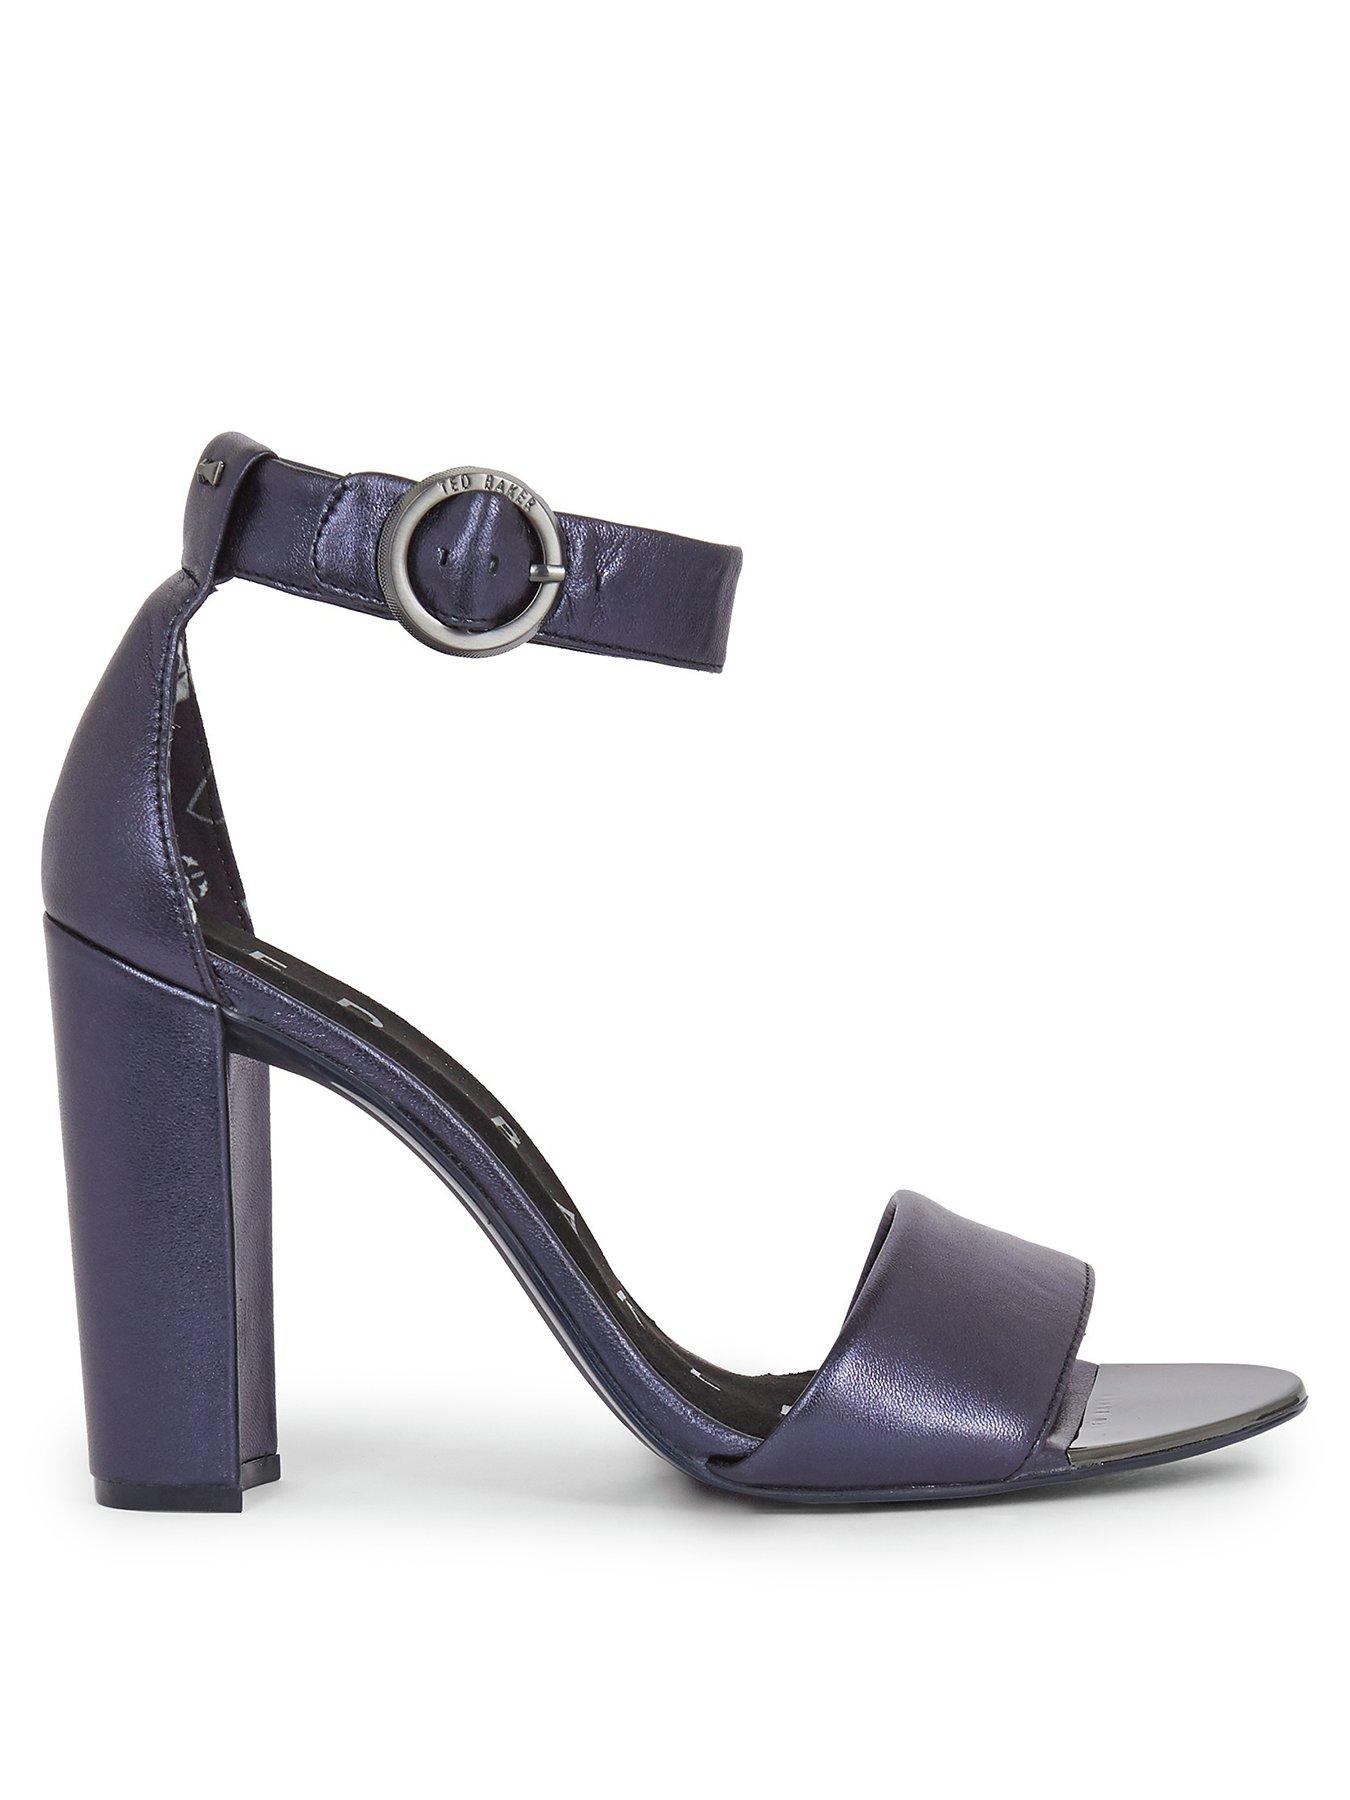 blue block heel sandals uk